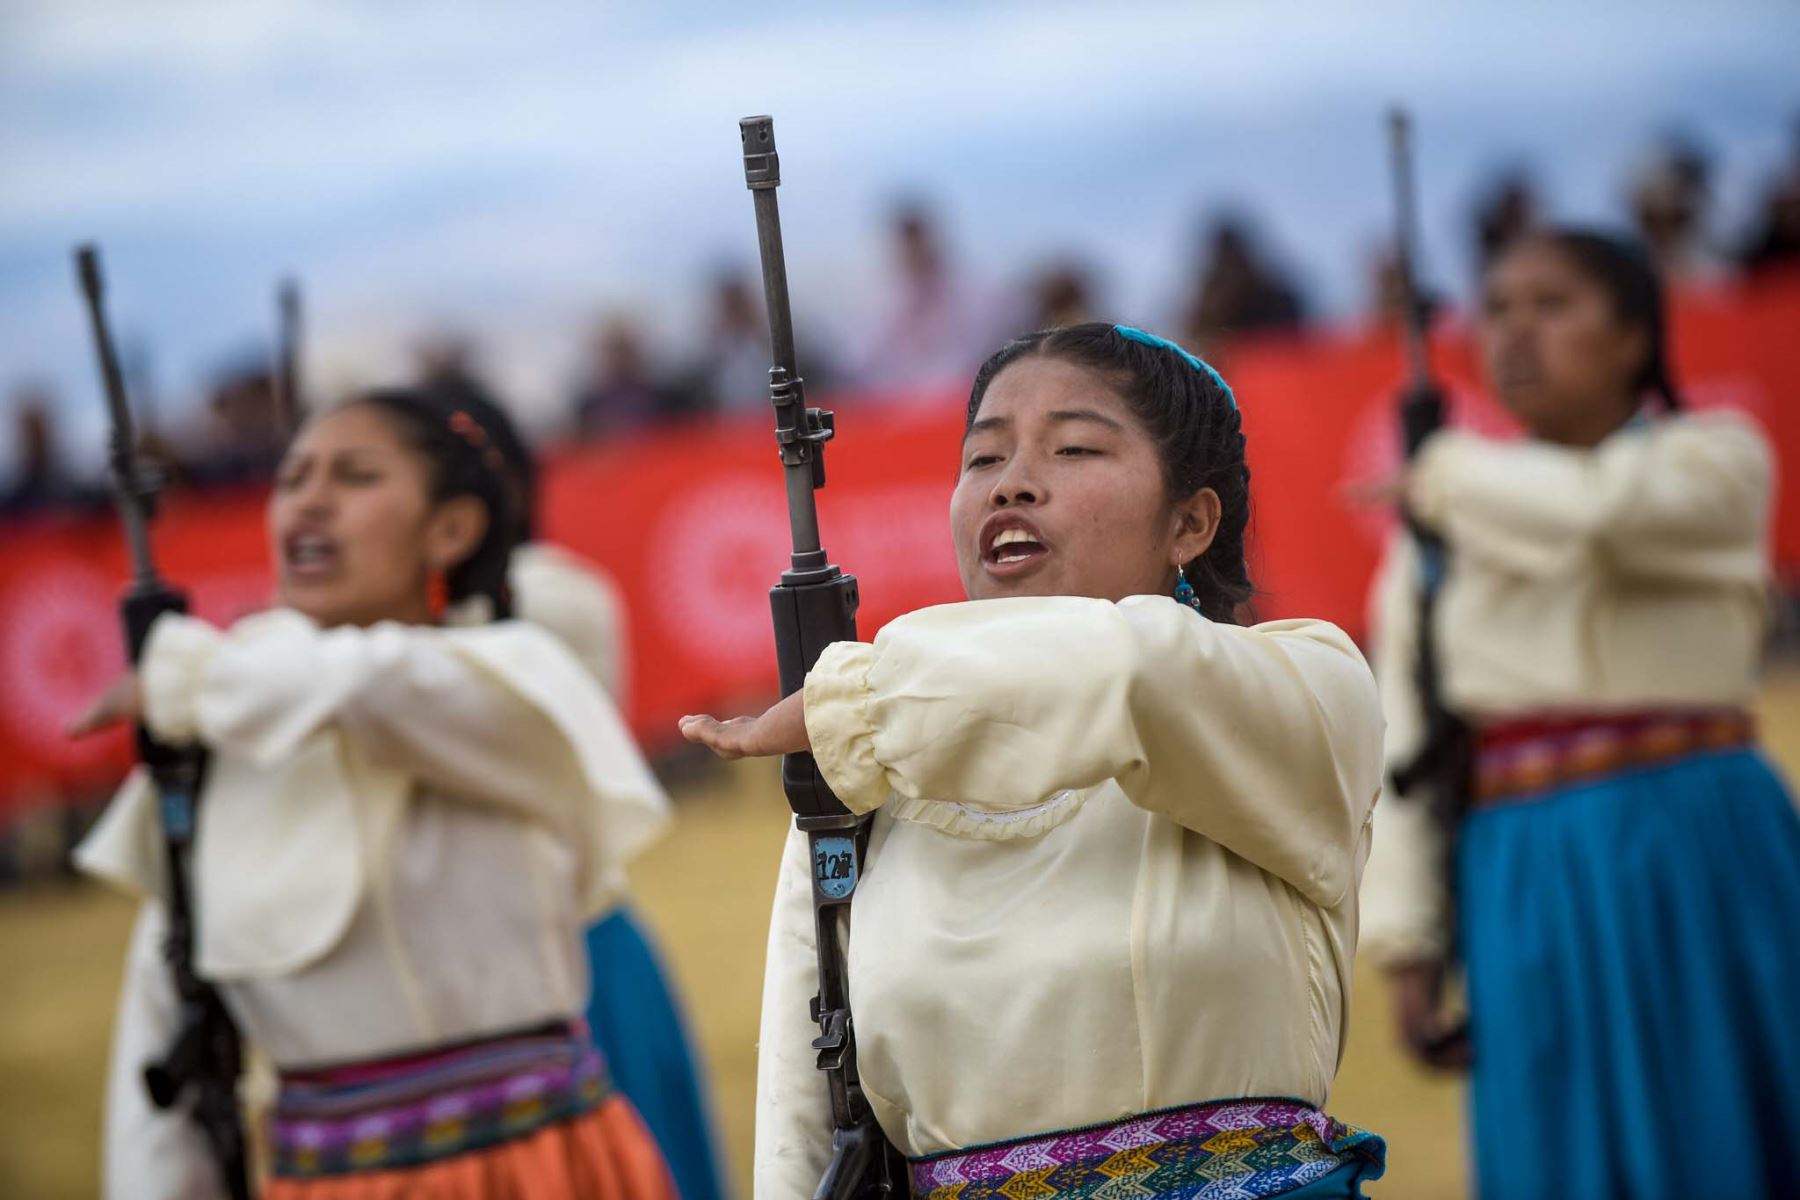 Conmemoración de los 198.° aniversario de la batalla de Ayacucho, gesta en la que el Ejército Unido Libertador del Perú puso fin de manera victoriosa a las campañas terrestres de la guerra de independencia. Foto: Bicentenario